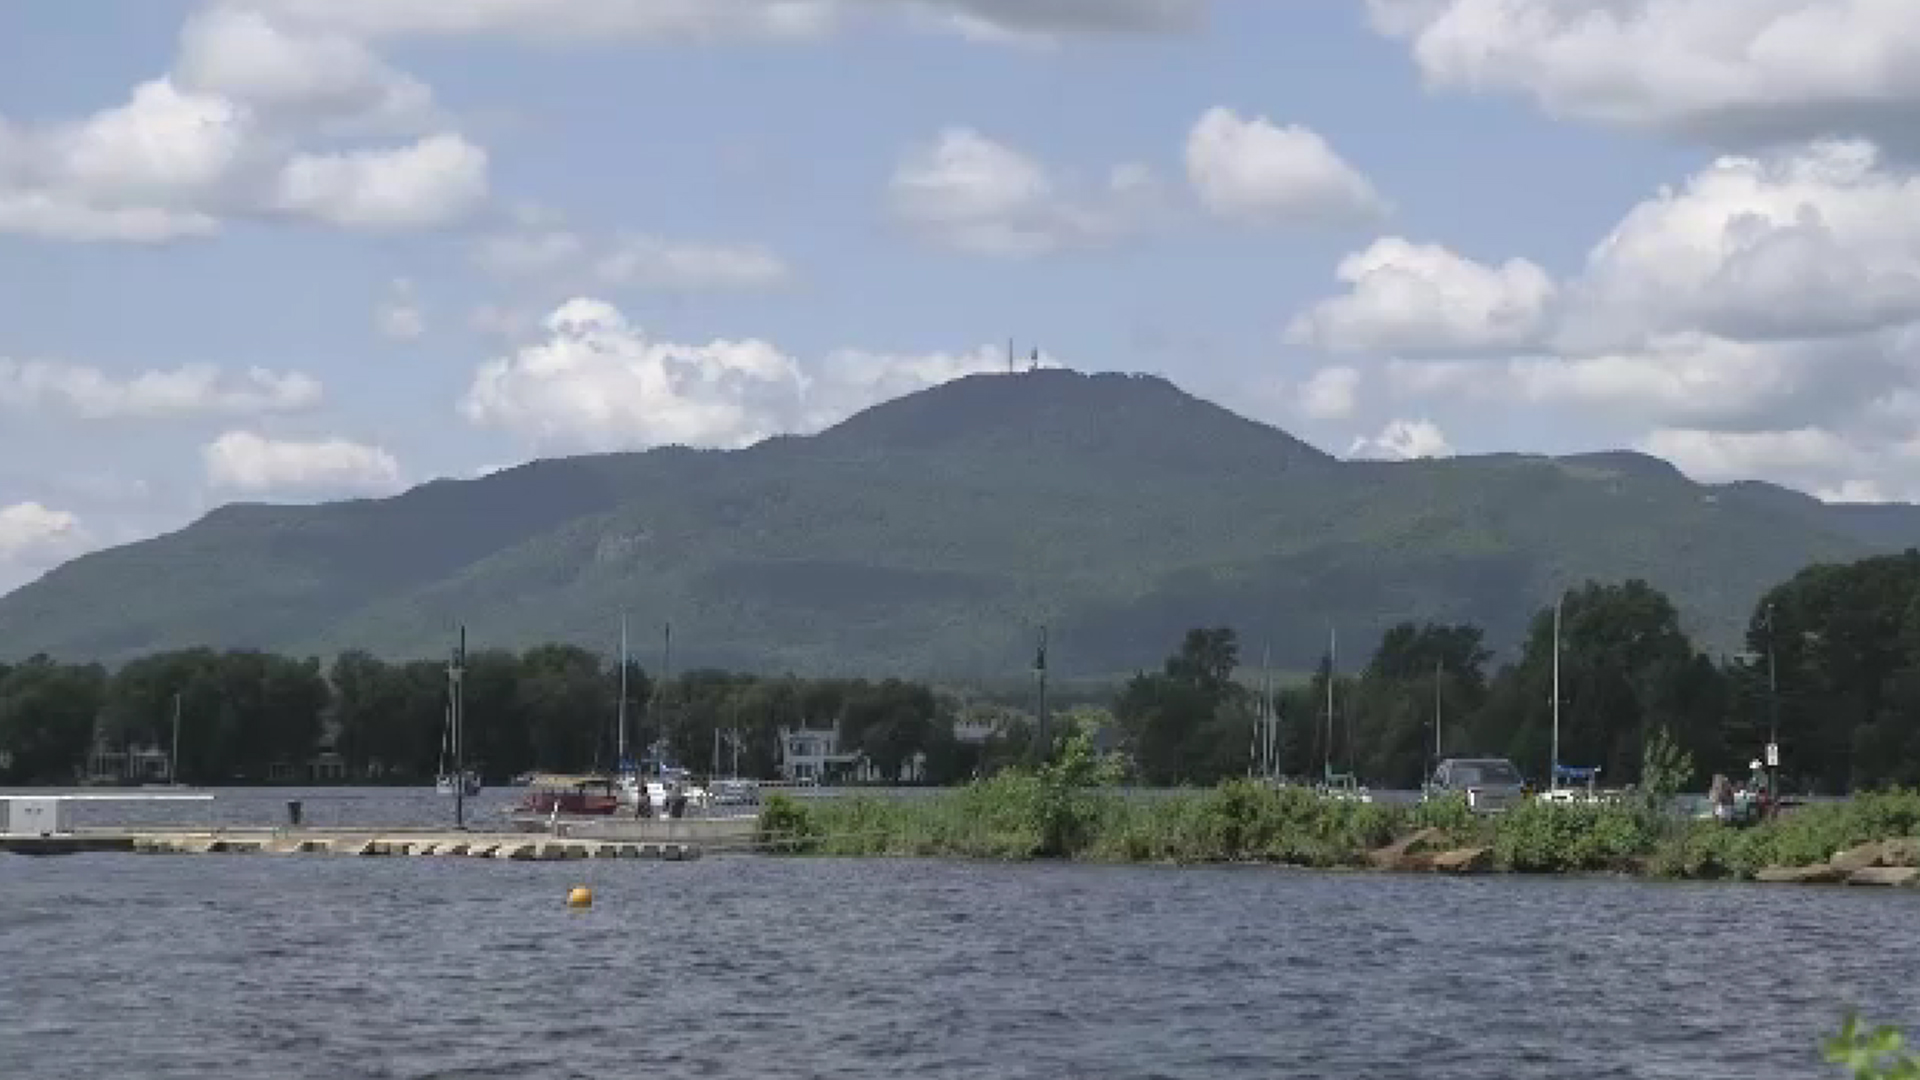 Le ministère a mentionné dans un communiqué que le Québec était d’accord avec la ville de Sherbrooke, qui a constaté que le lac Magog présentait une forte «contamination bactériologique».